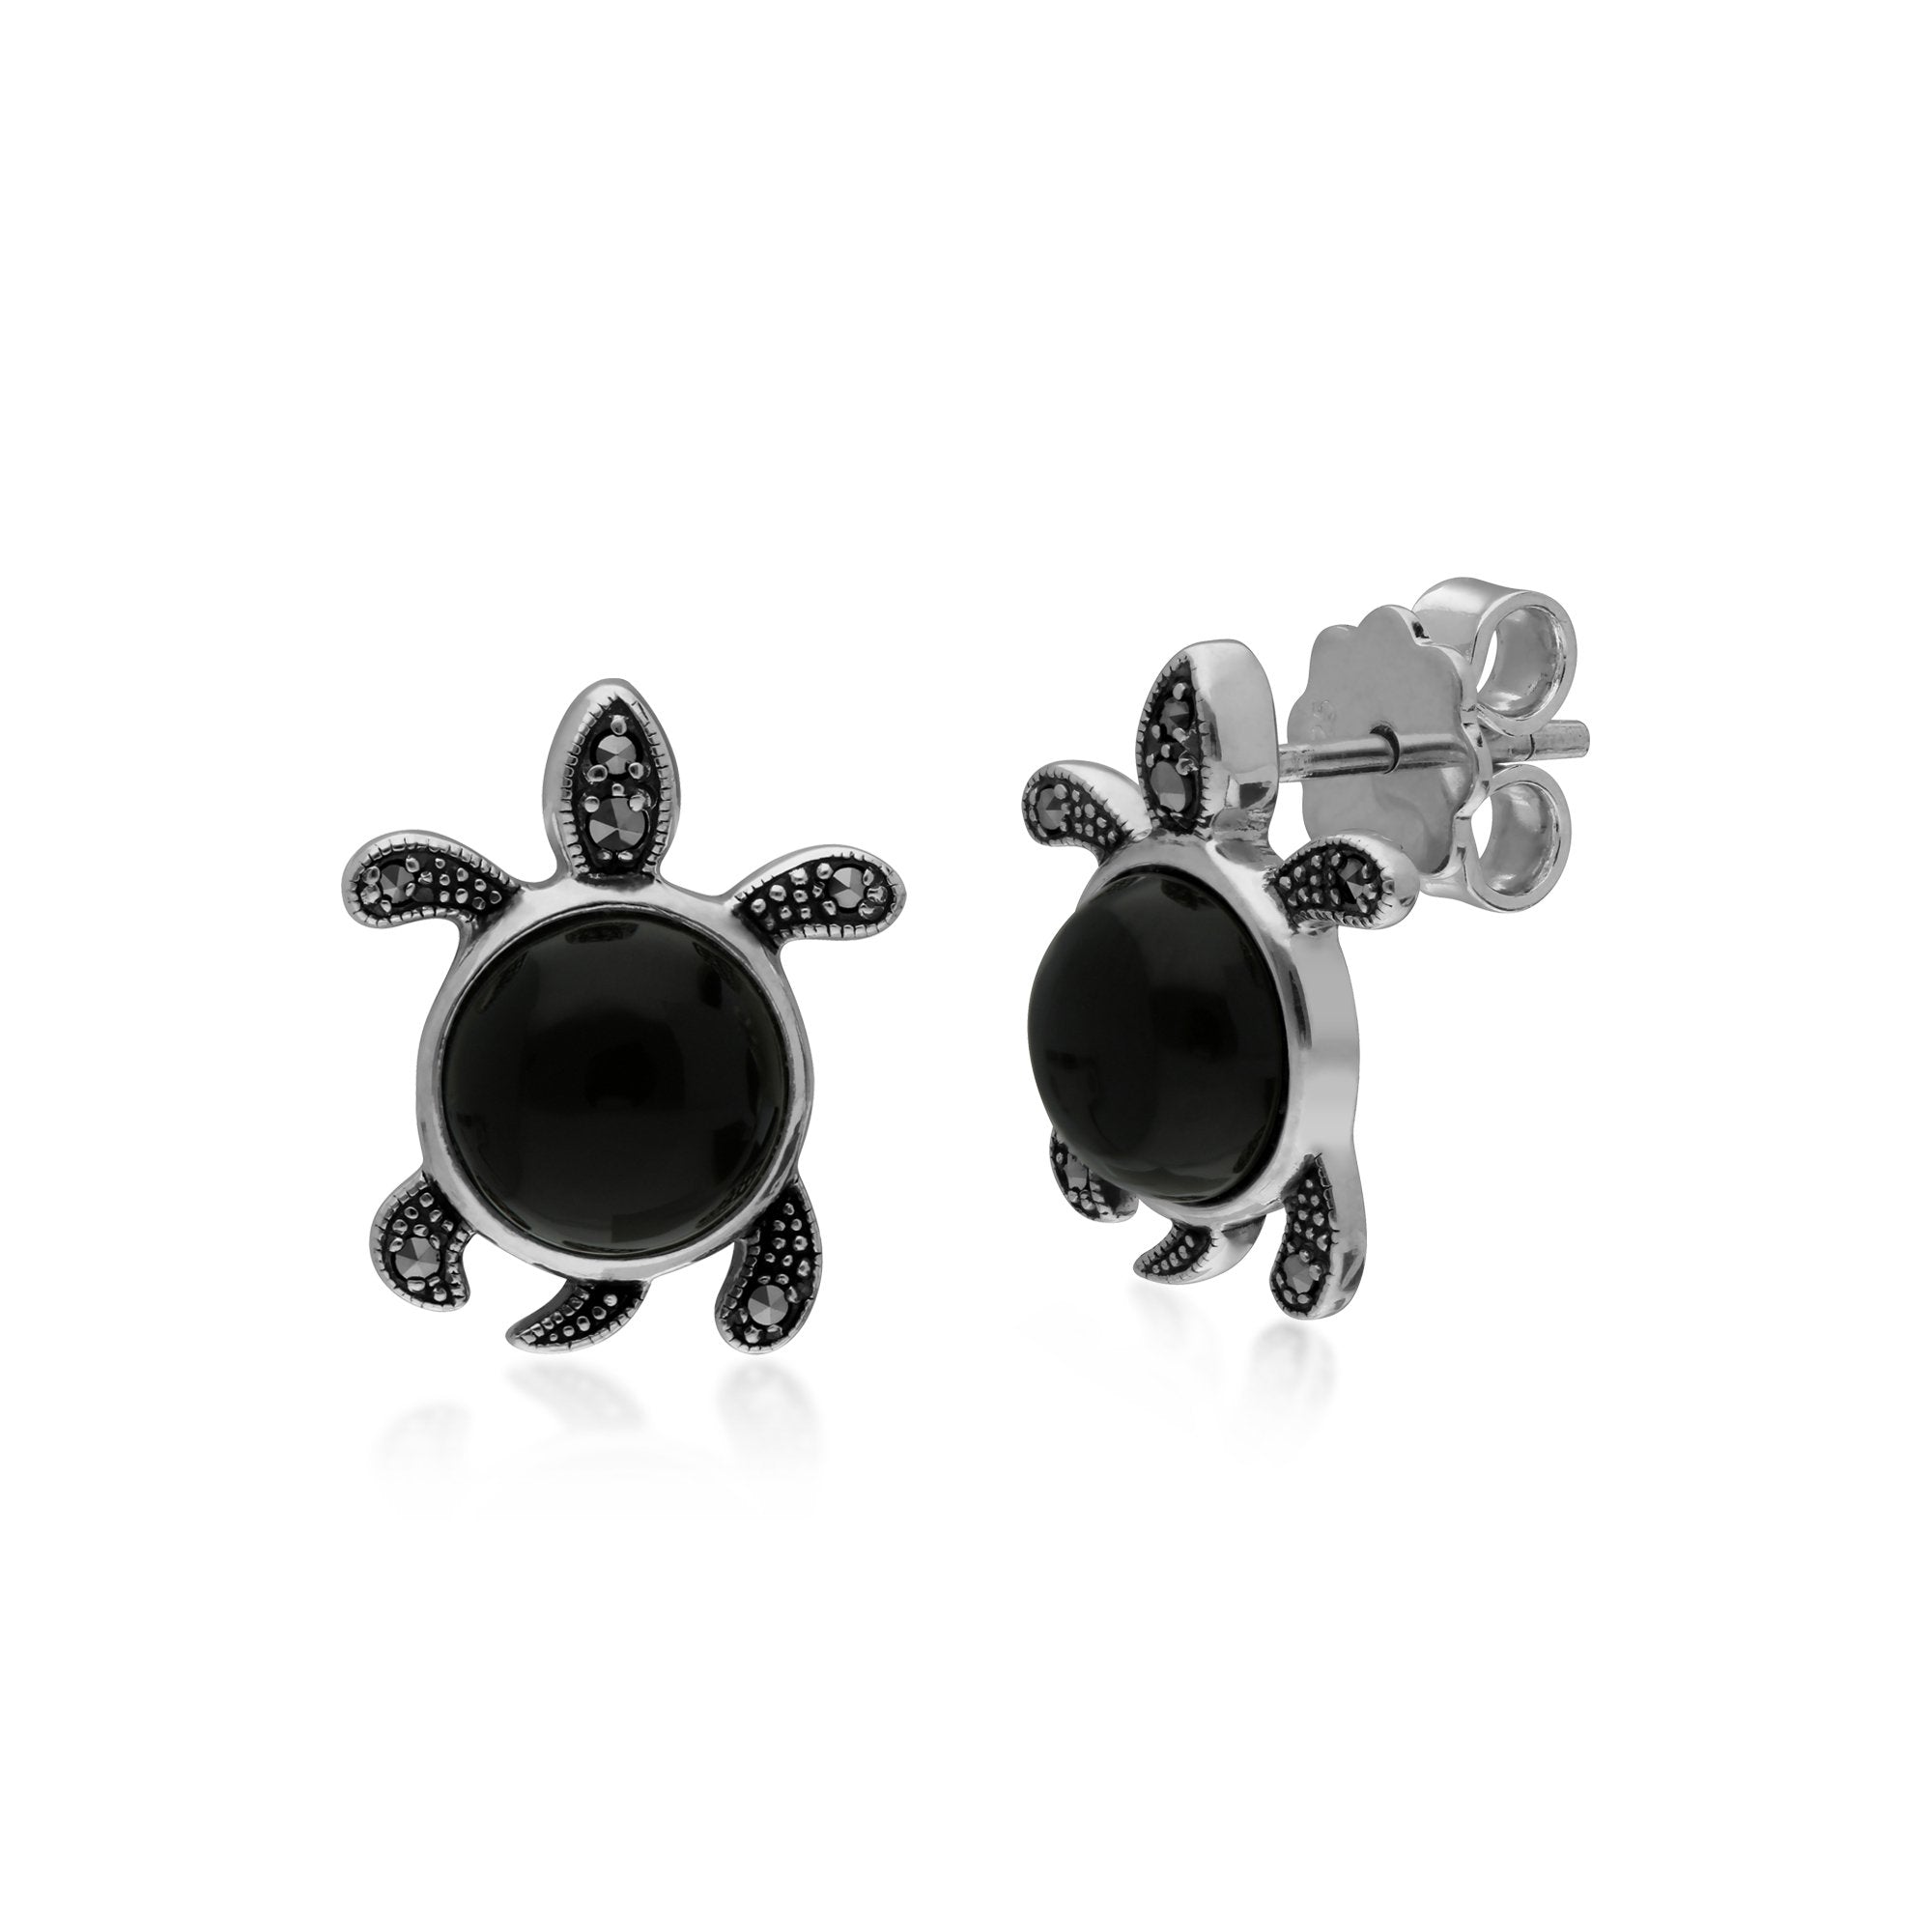 Gemondo Sterling Silver Black Onyx & Marcasite Turtle Stud Earrings